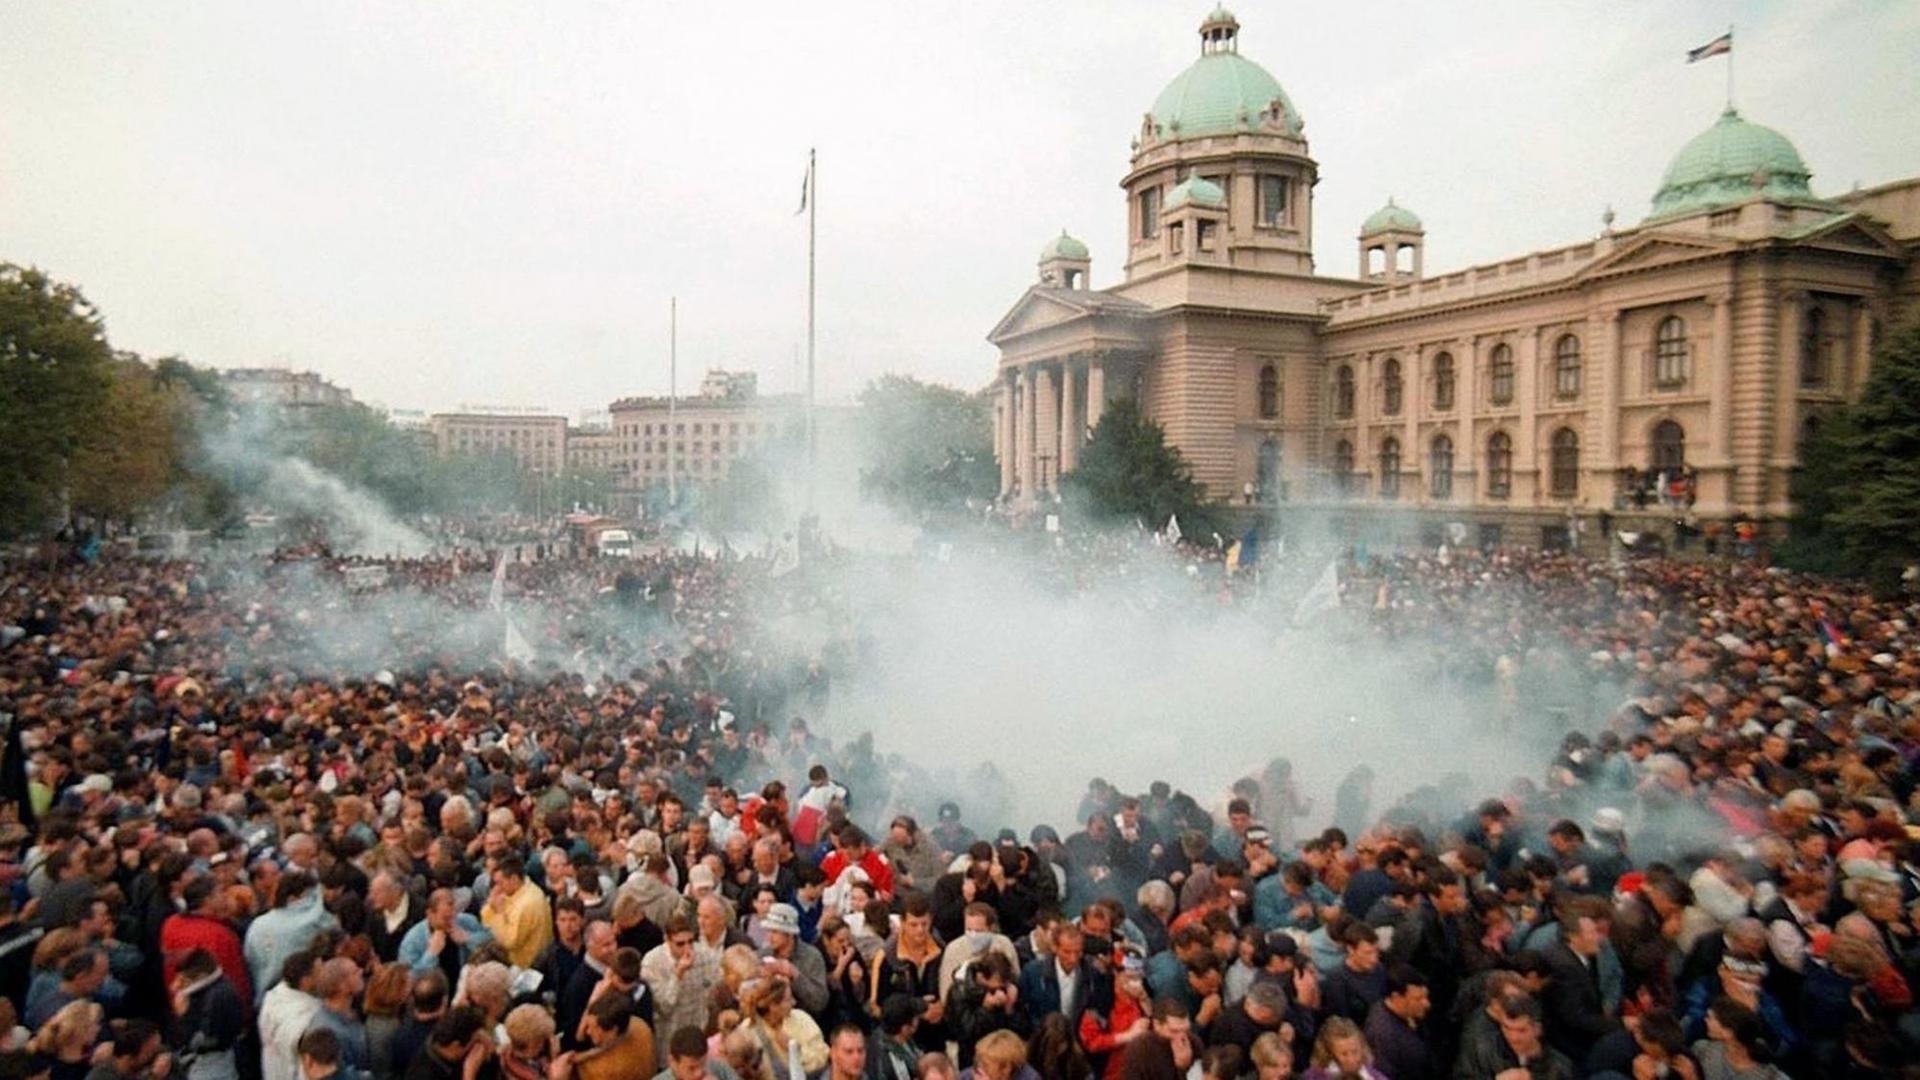 Rauchschwaden über einergroßen Menschenmenge Hunderttausende Anhänger der serbischen Opposition versammelten sich am 5.10.2000 vor dem Parlamentsgebäude in Belgrad Über ihnen steht eine Tränengaswolke, die von Patronen der Polizei ausgelöst wurde. Nach dem Aufstand gegen Jugoslawiens Präsidenten Milosevic ist die Opposition zur Machtübernahme bereit. Der bei den Präsidentschaftswahlen siegreiche Kostunica kündigte im serbischen Fernsehen am späten Donnerstagabend (5.10.) an, rasch die Amtsgeschäfte übernehmen zu wollen.